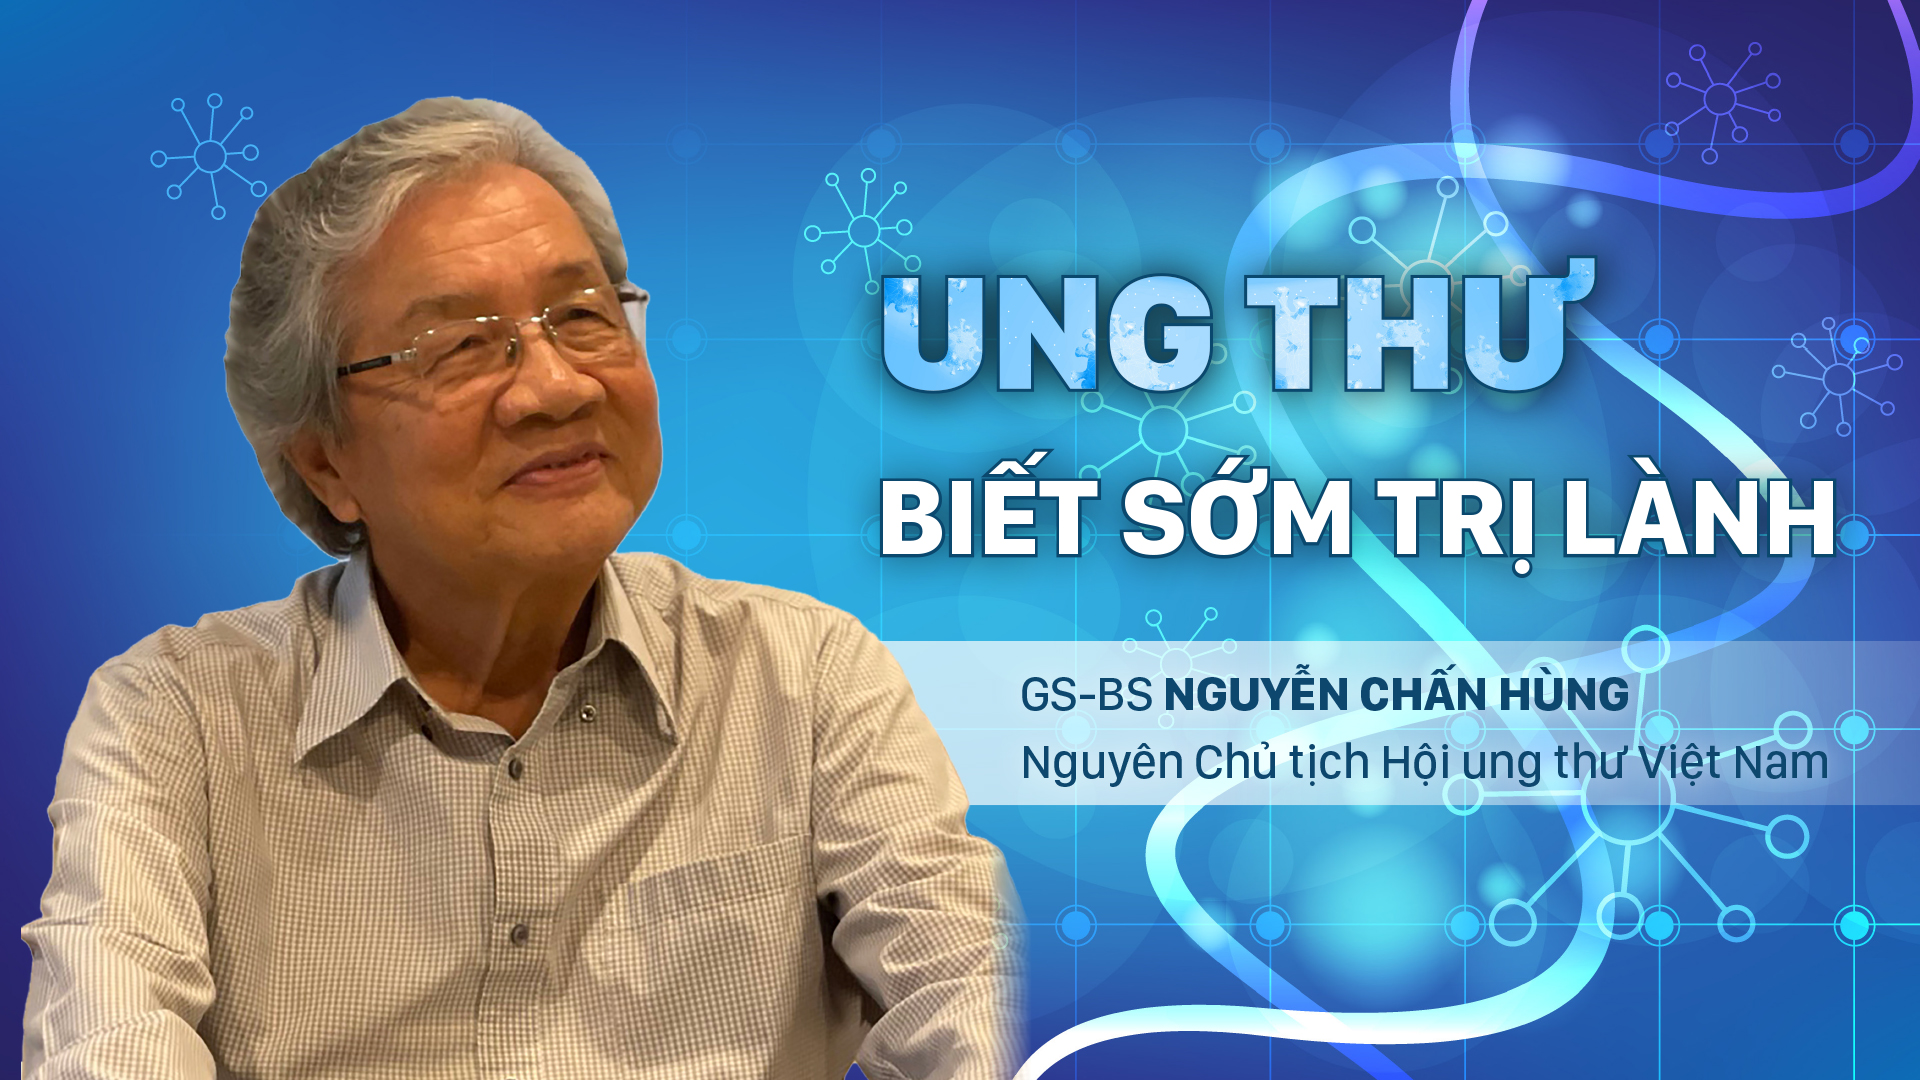 GS.BS Nguyễn Chấn Hùng: 'Ung thư, biết sớm dễ trị lành'